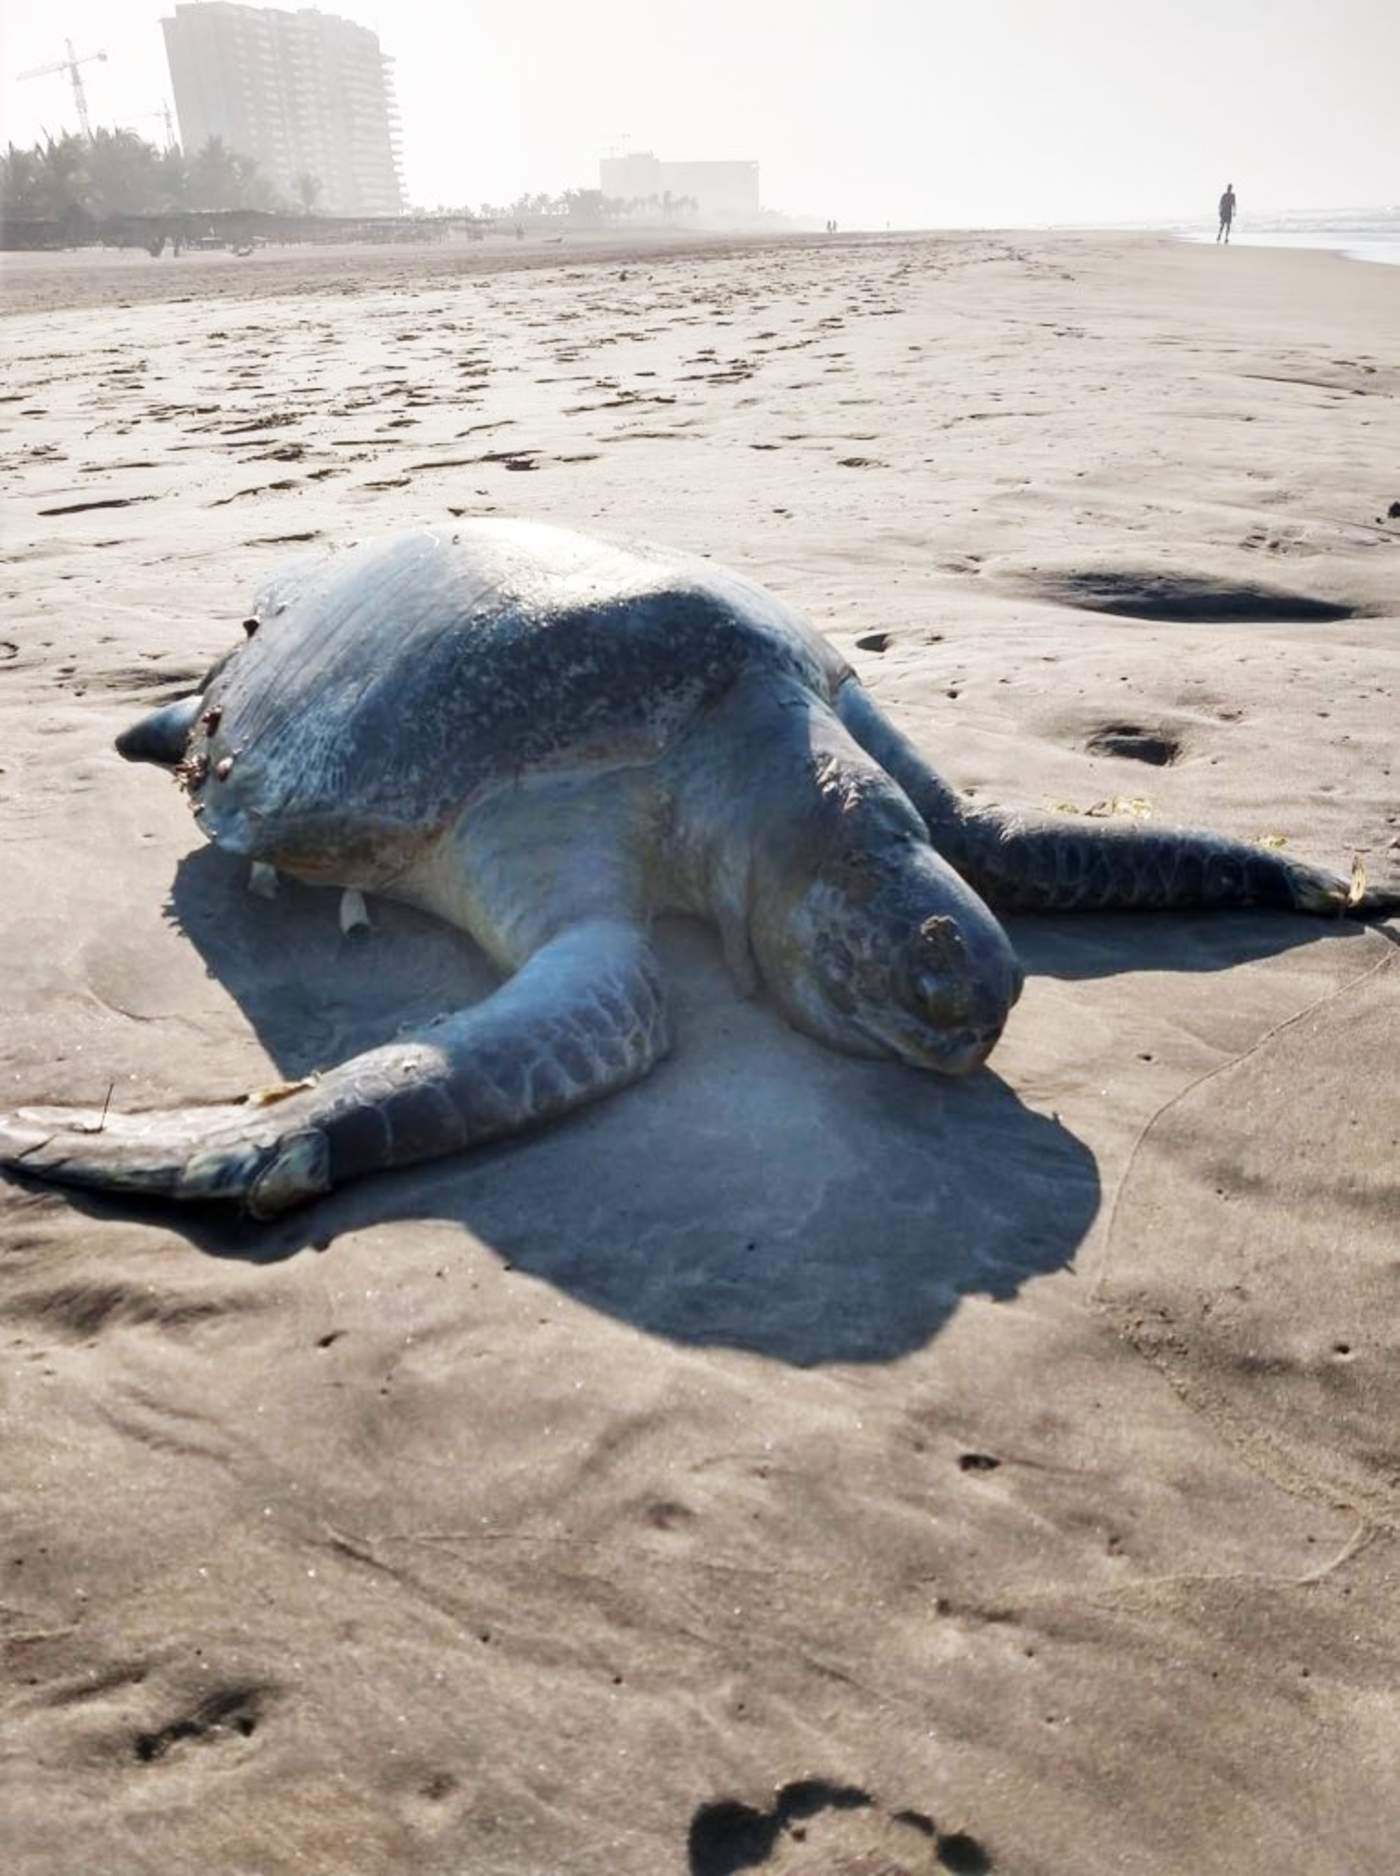 La Secretaría de Medio Ambiente y Recursos Naturales (Semaren) de Guerrero consideró poco probable que esto se deba a la caza furtiva y señaló que los animales murieron dentro del mar. (TWITTER) 